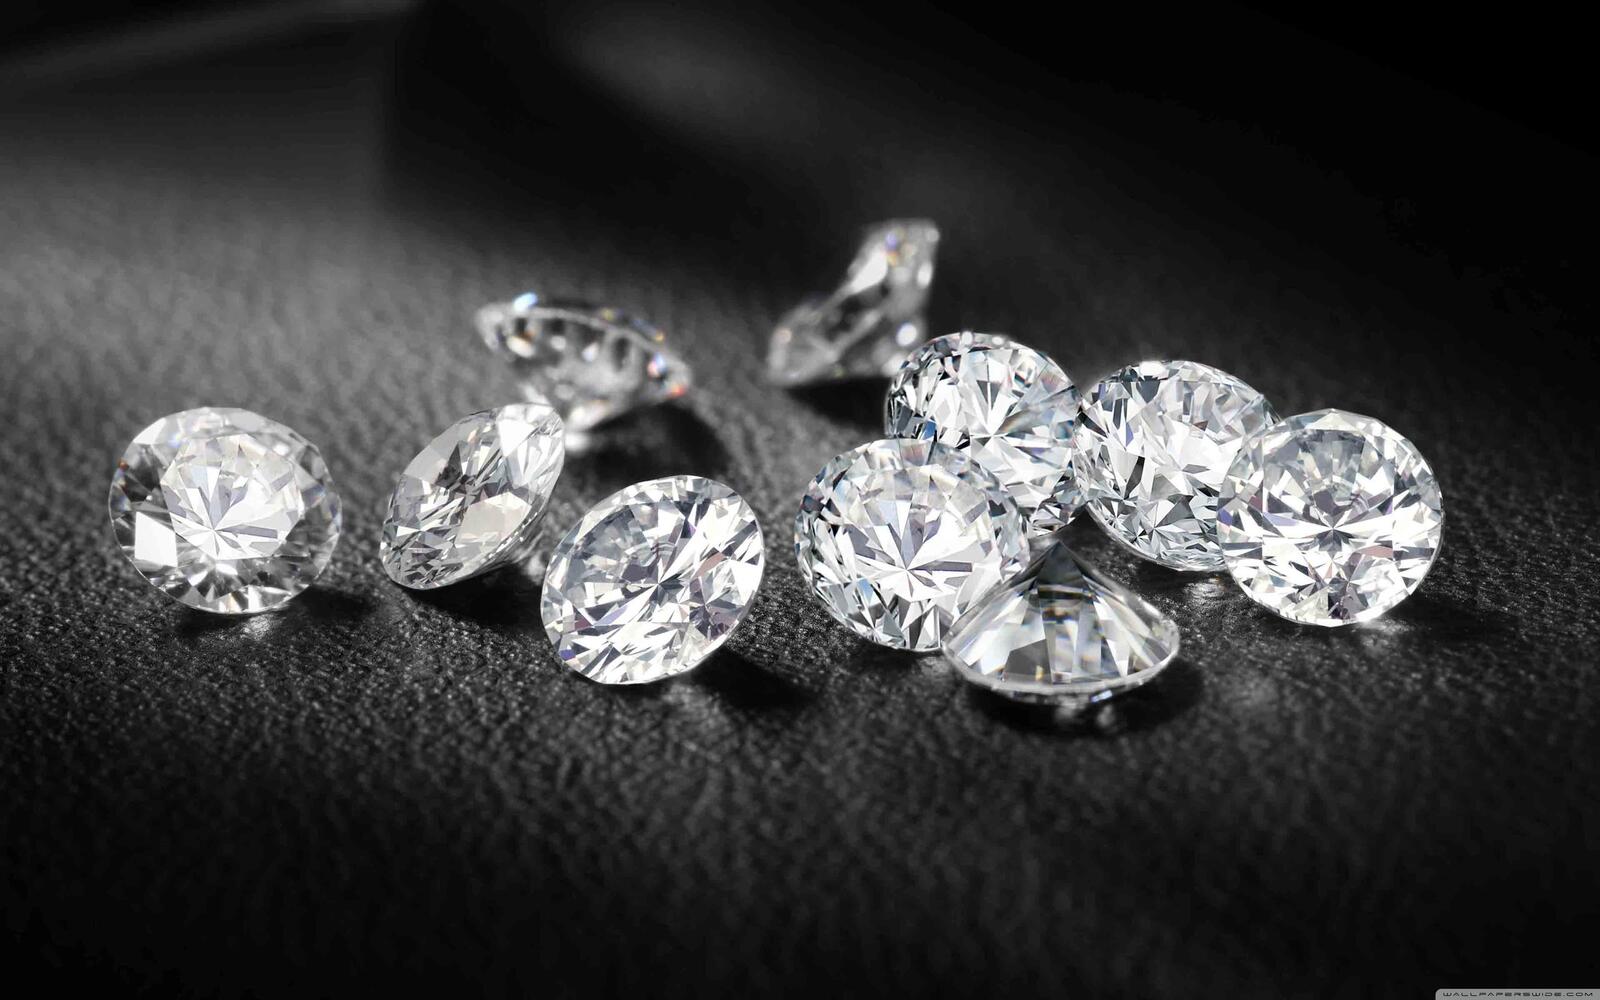 Wallpapers diamonds jewels macro on the desktop